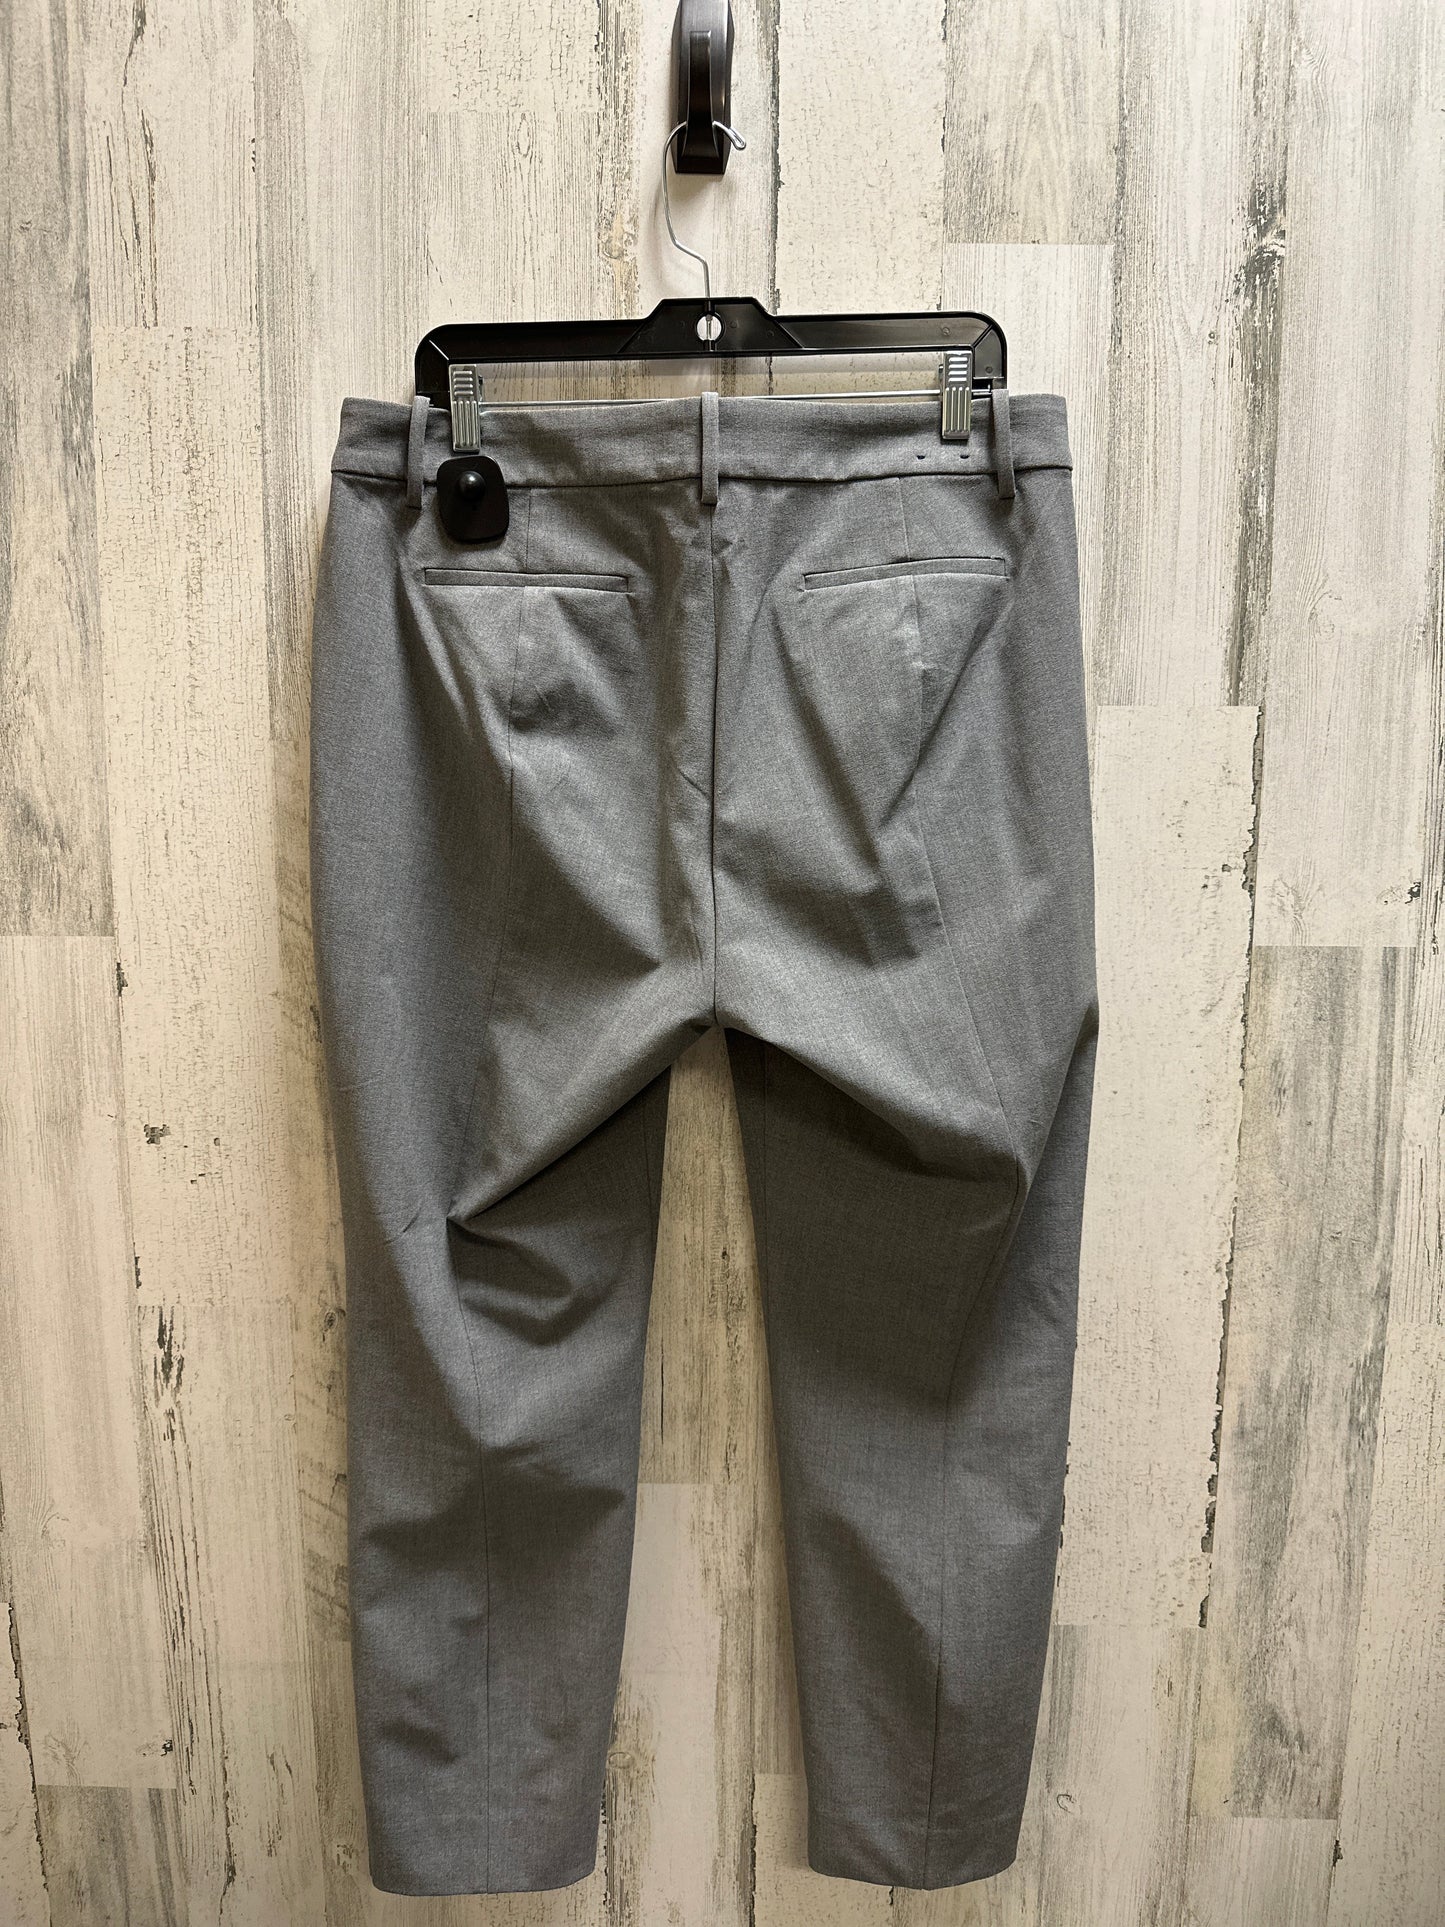 Pants Work/dress By J Crew  Size: 14